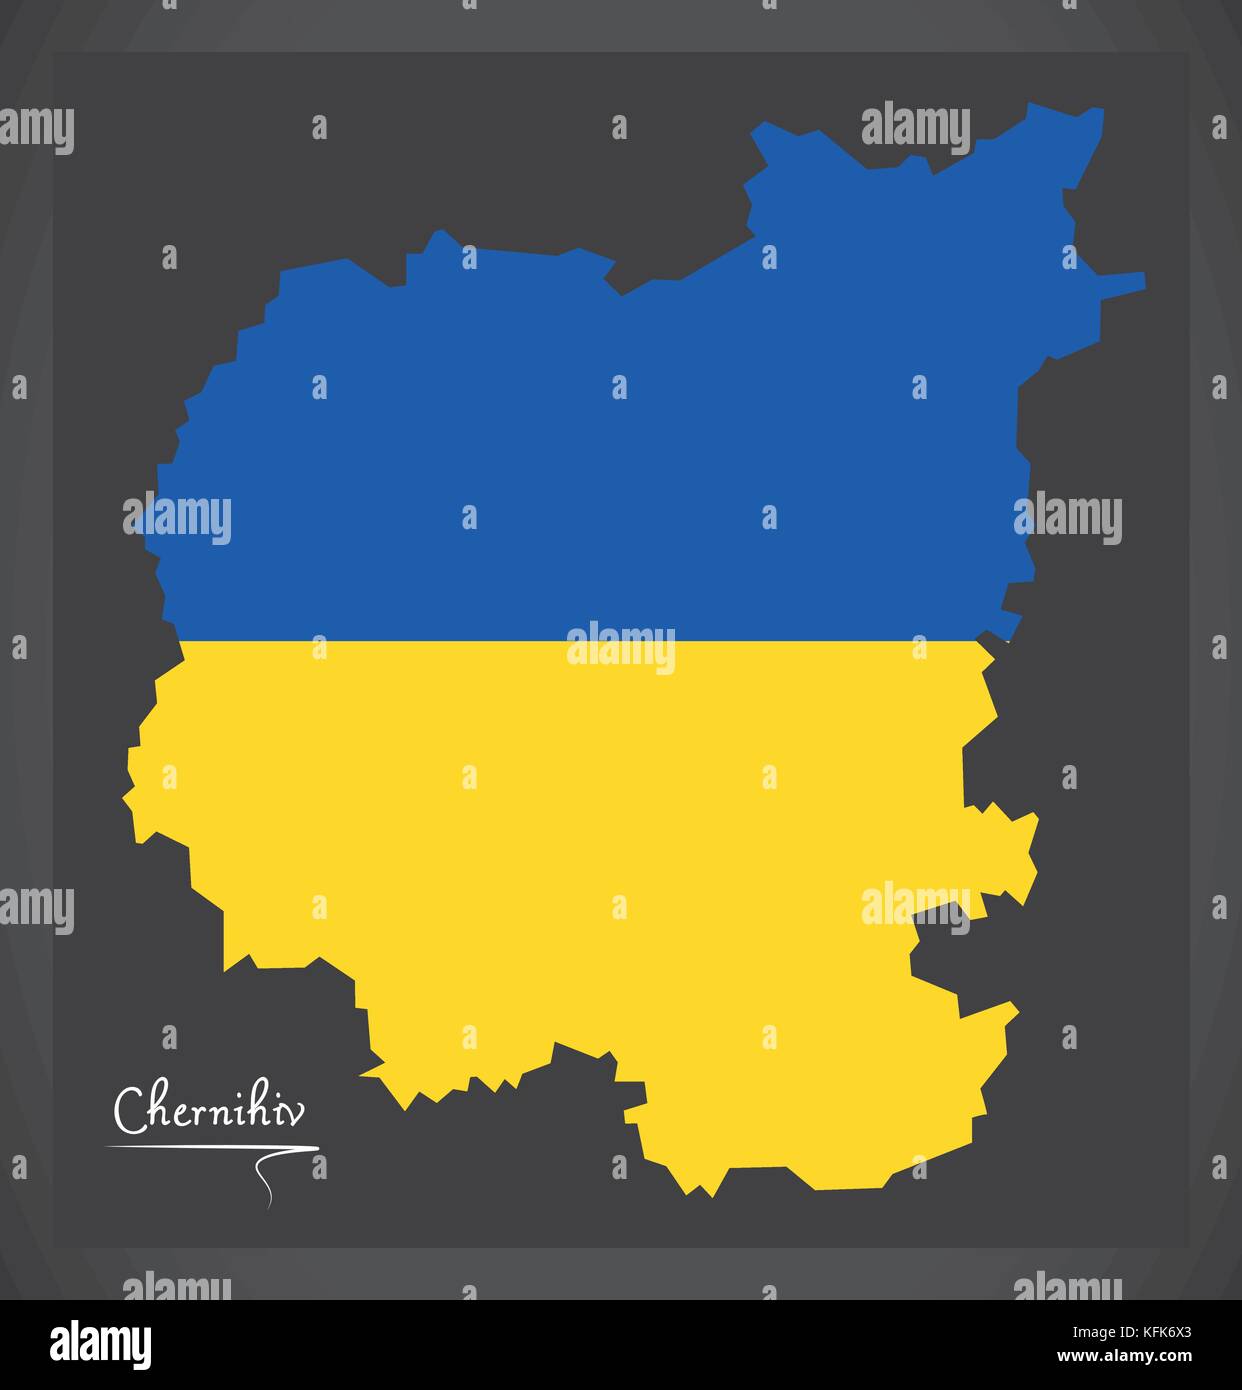 Chernihiv map of Ukraine with Ukrainian national flag illustration Stock Vector